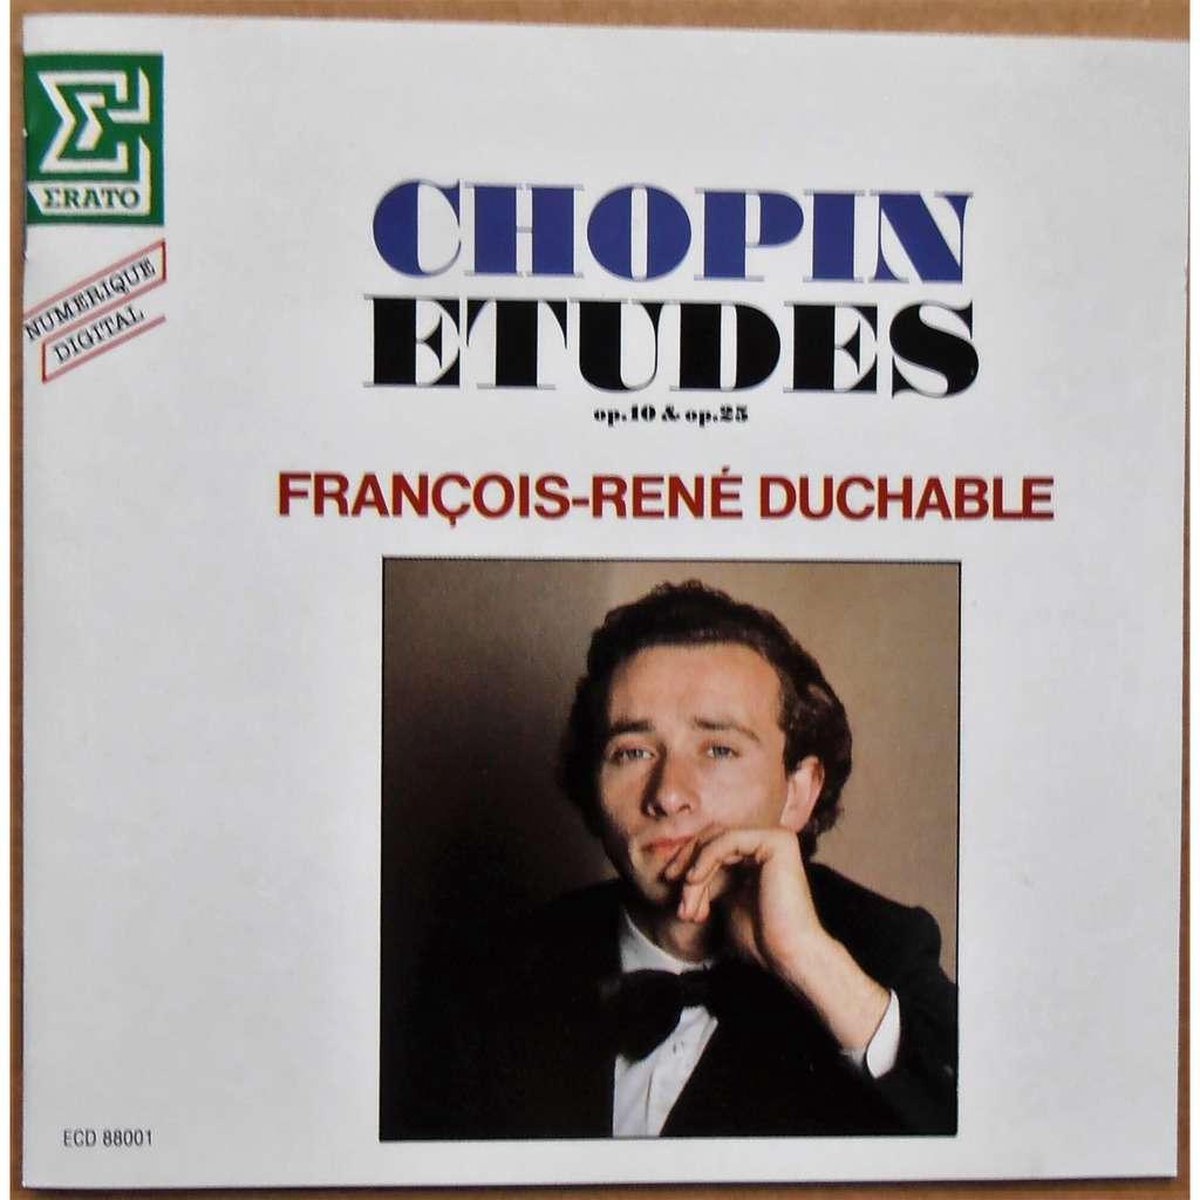 Chopin Etudes -  Op.10 & Op. 25  -  Duchable - Francois-René  Duchable